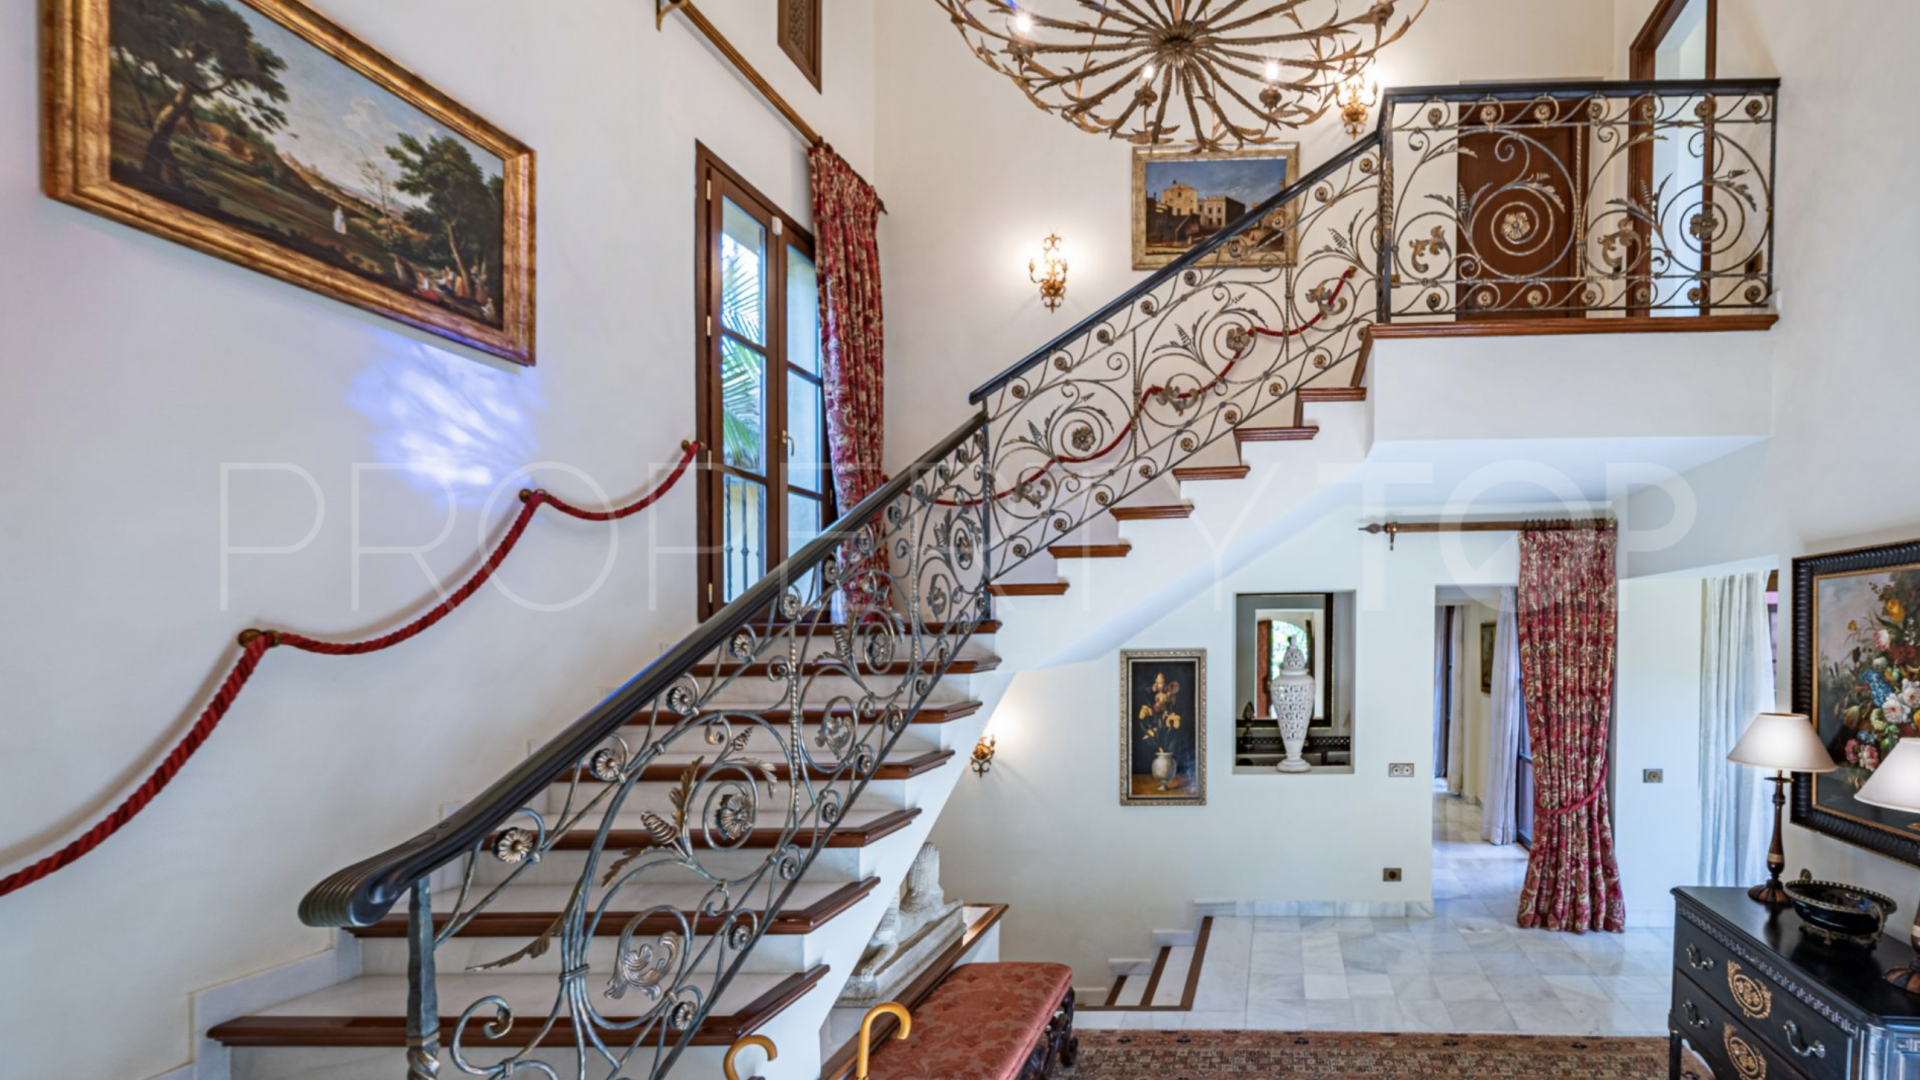 Villa for sale in Las Mimosas with 4 bedrooms